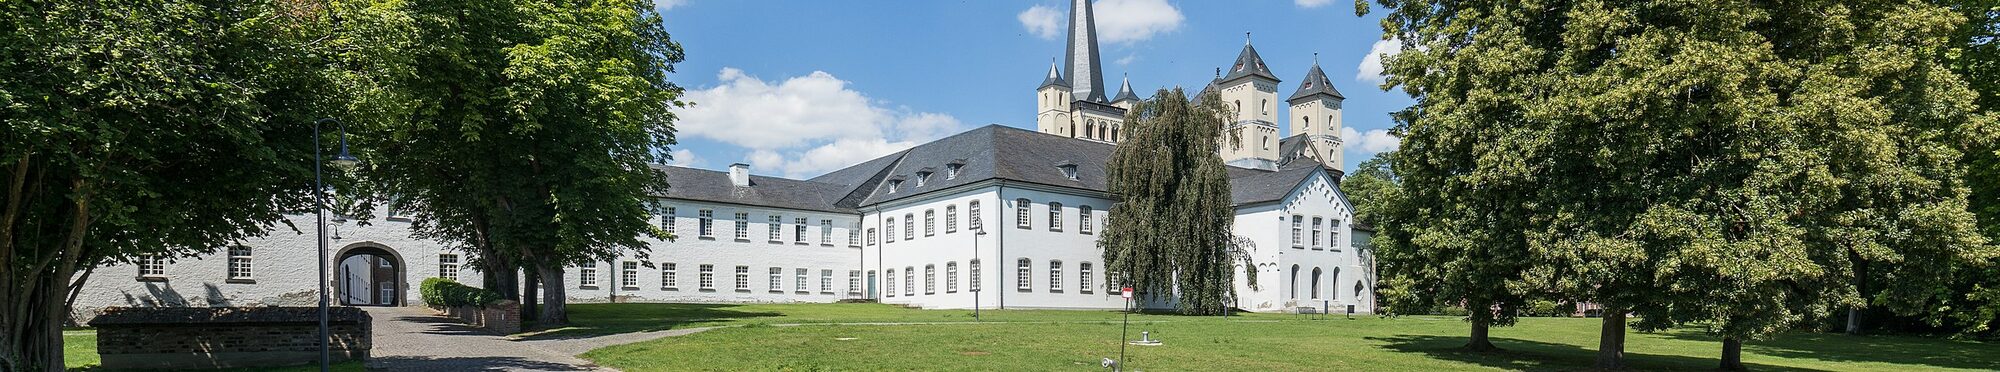 Abtei Brauweiler, Abteipark